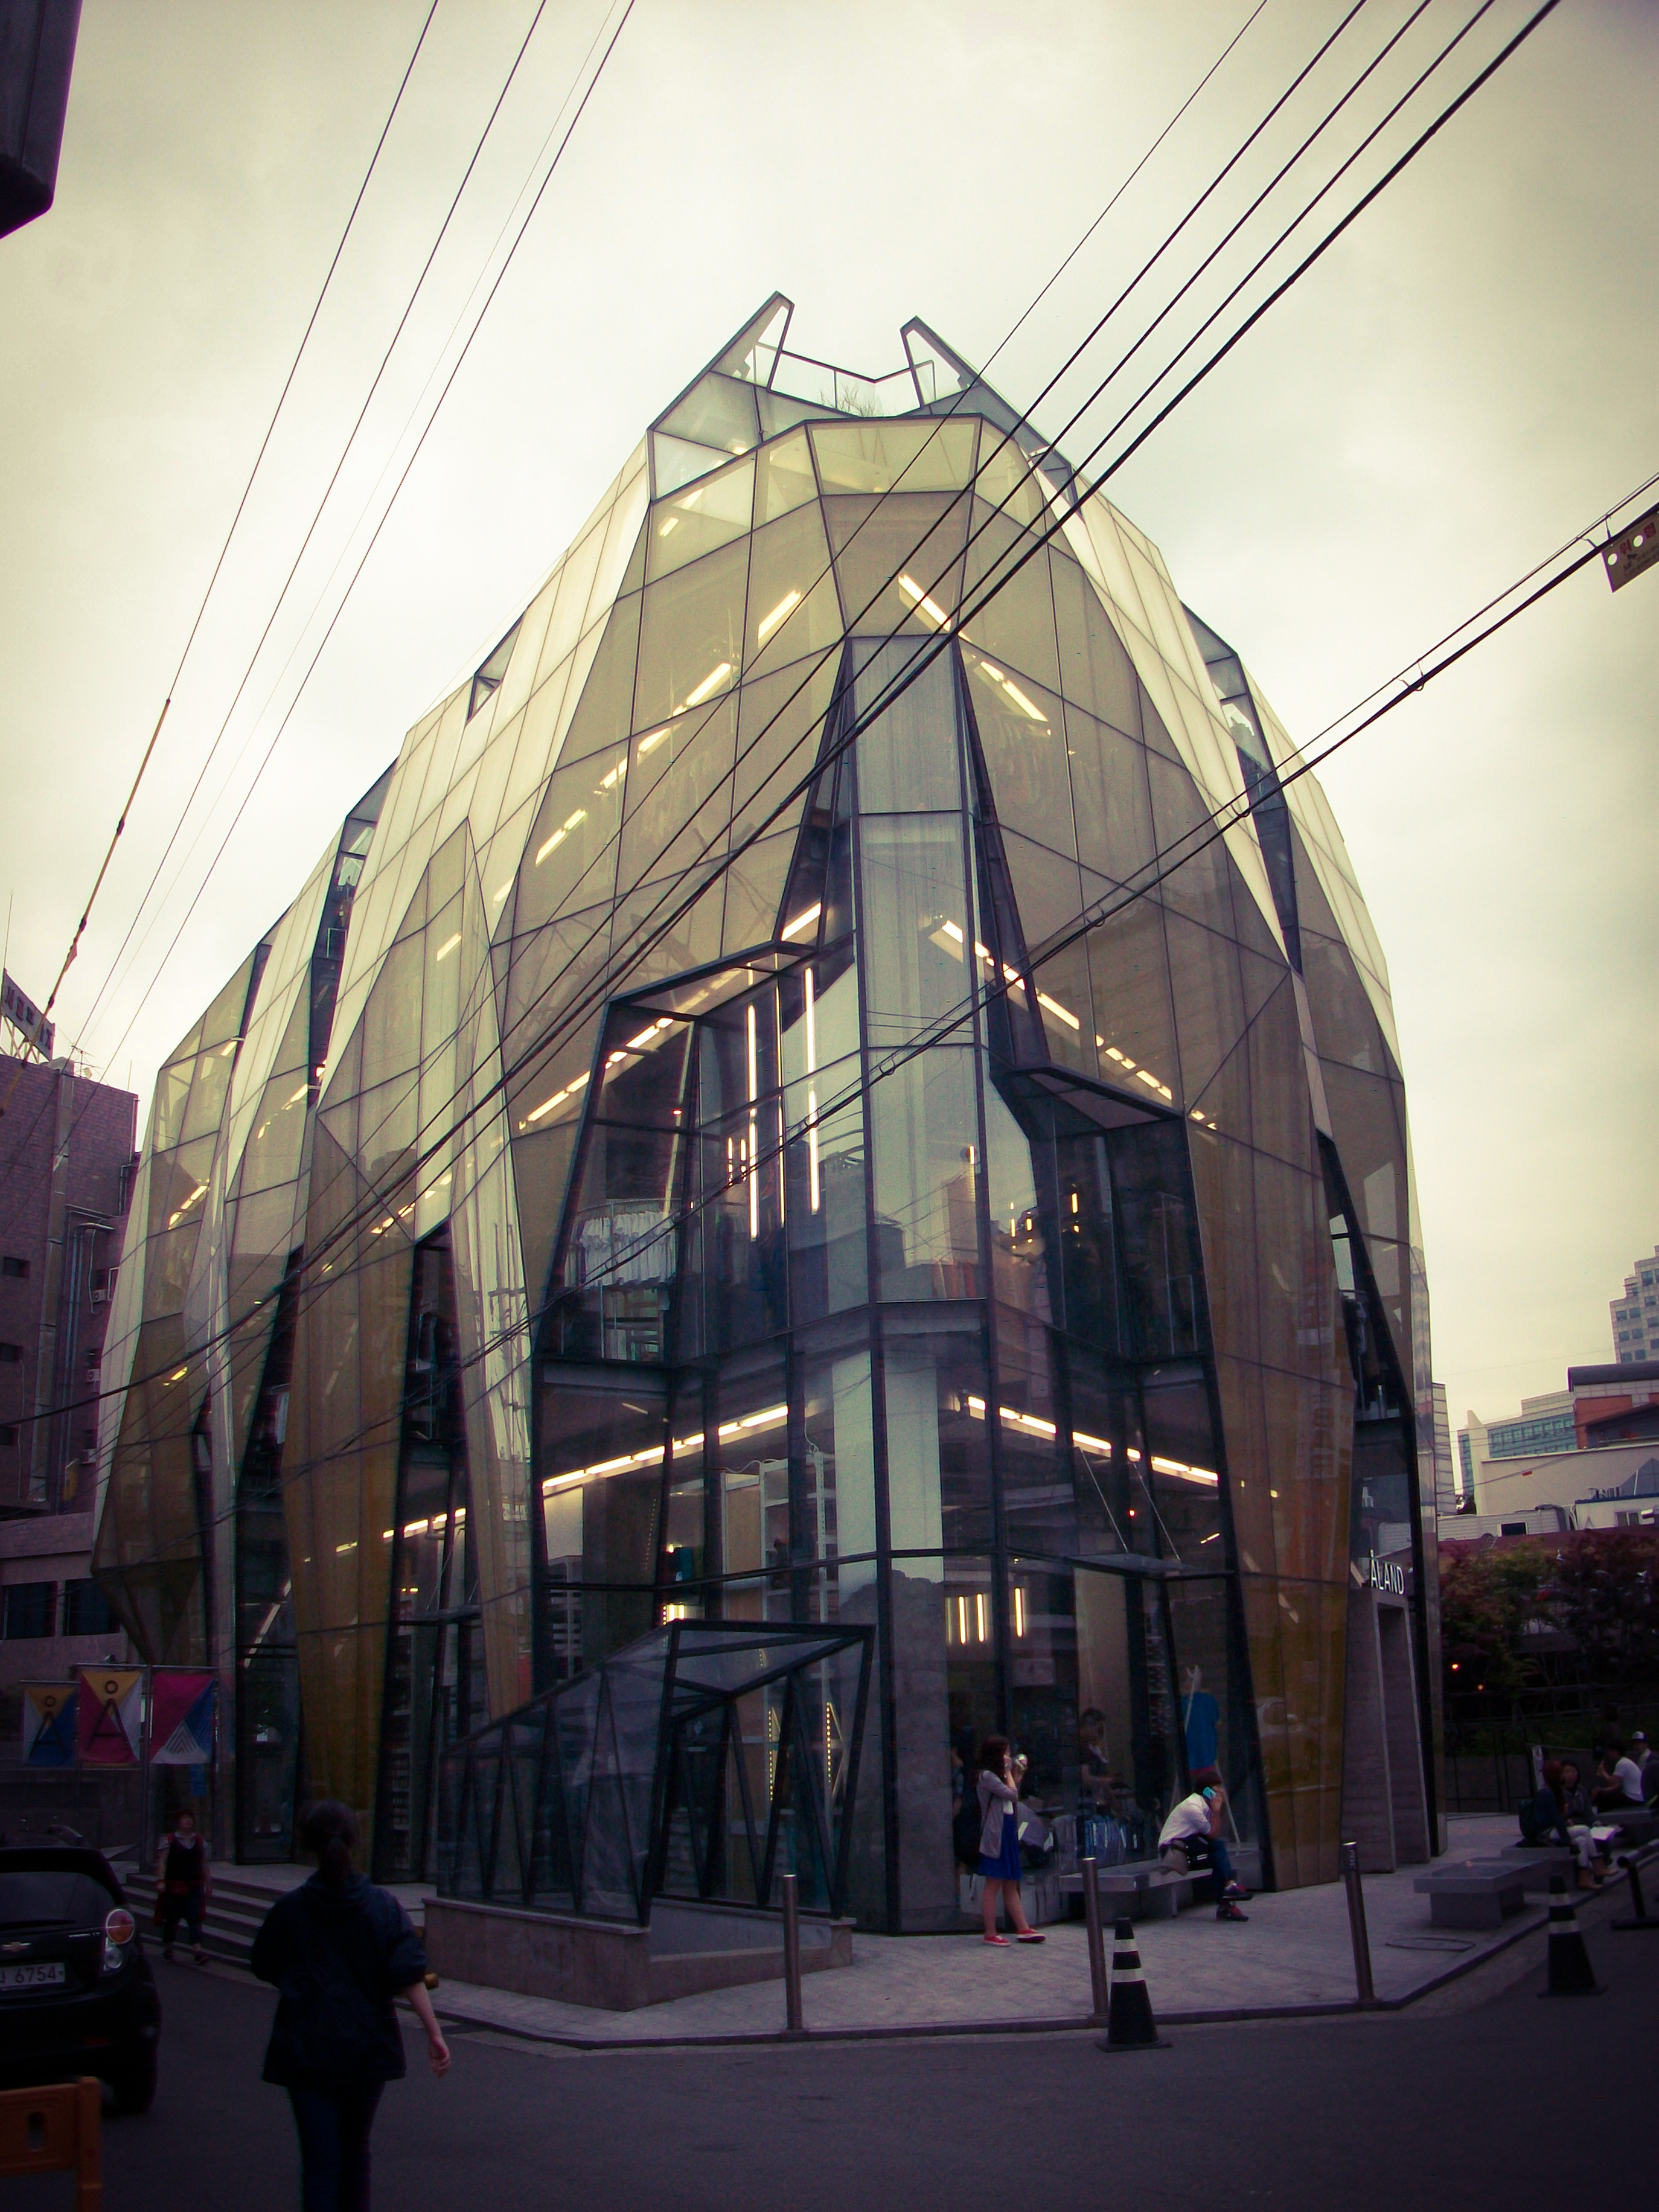 The Yellow Diamond / Jun Mitsui & Associates Architects + Unsangdong
Architects